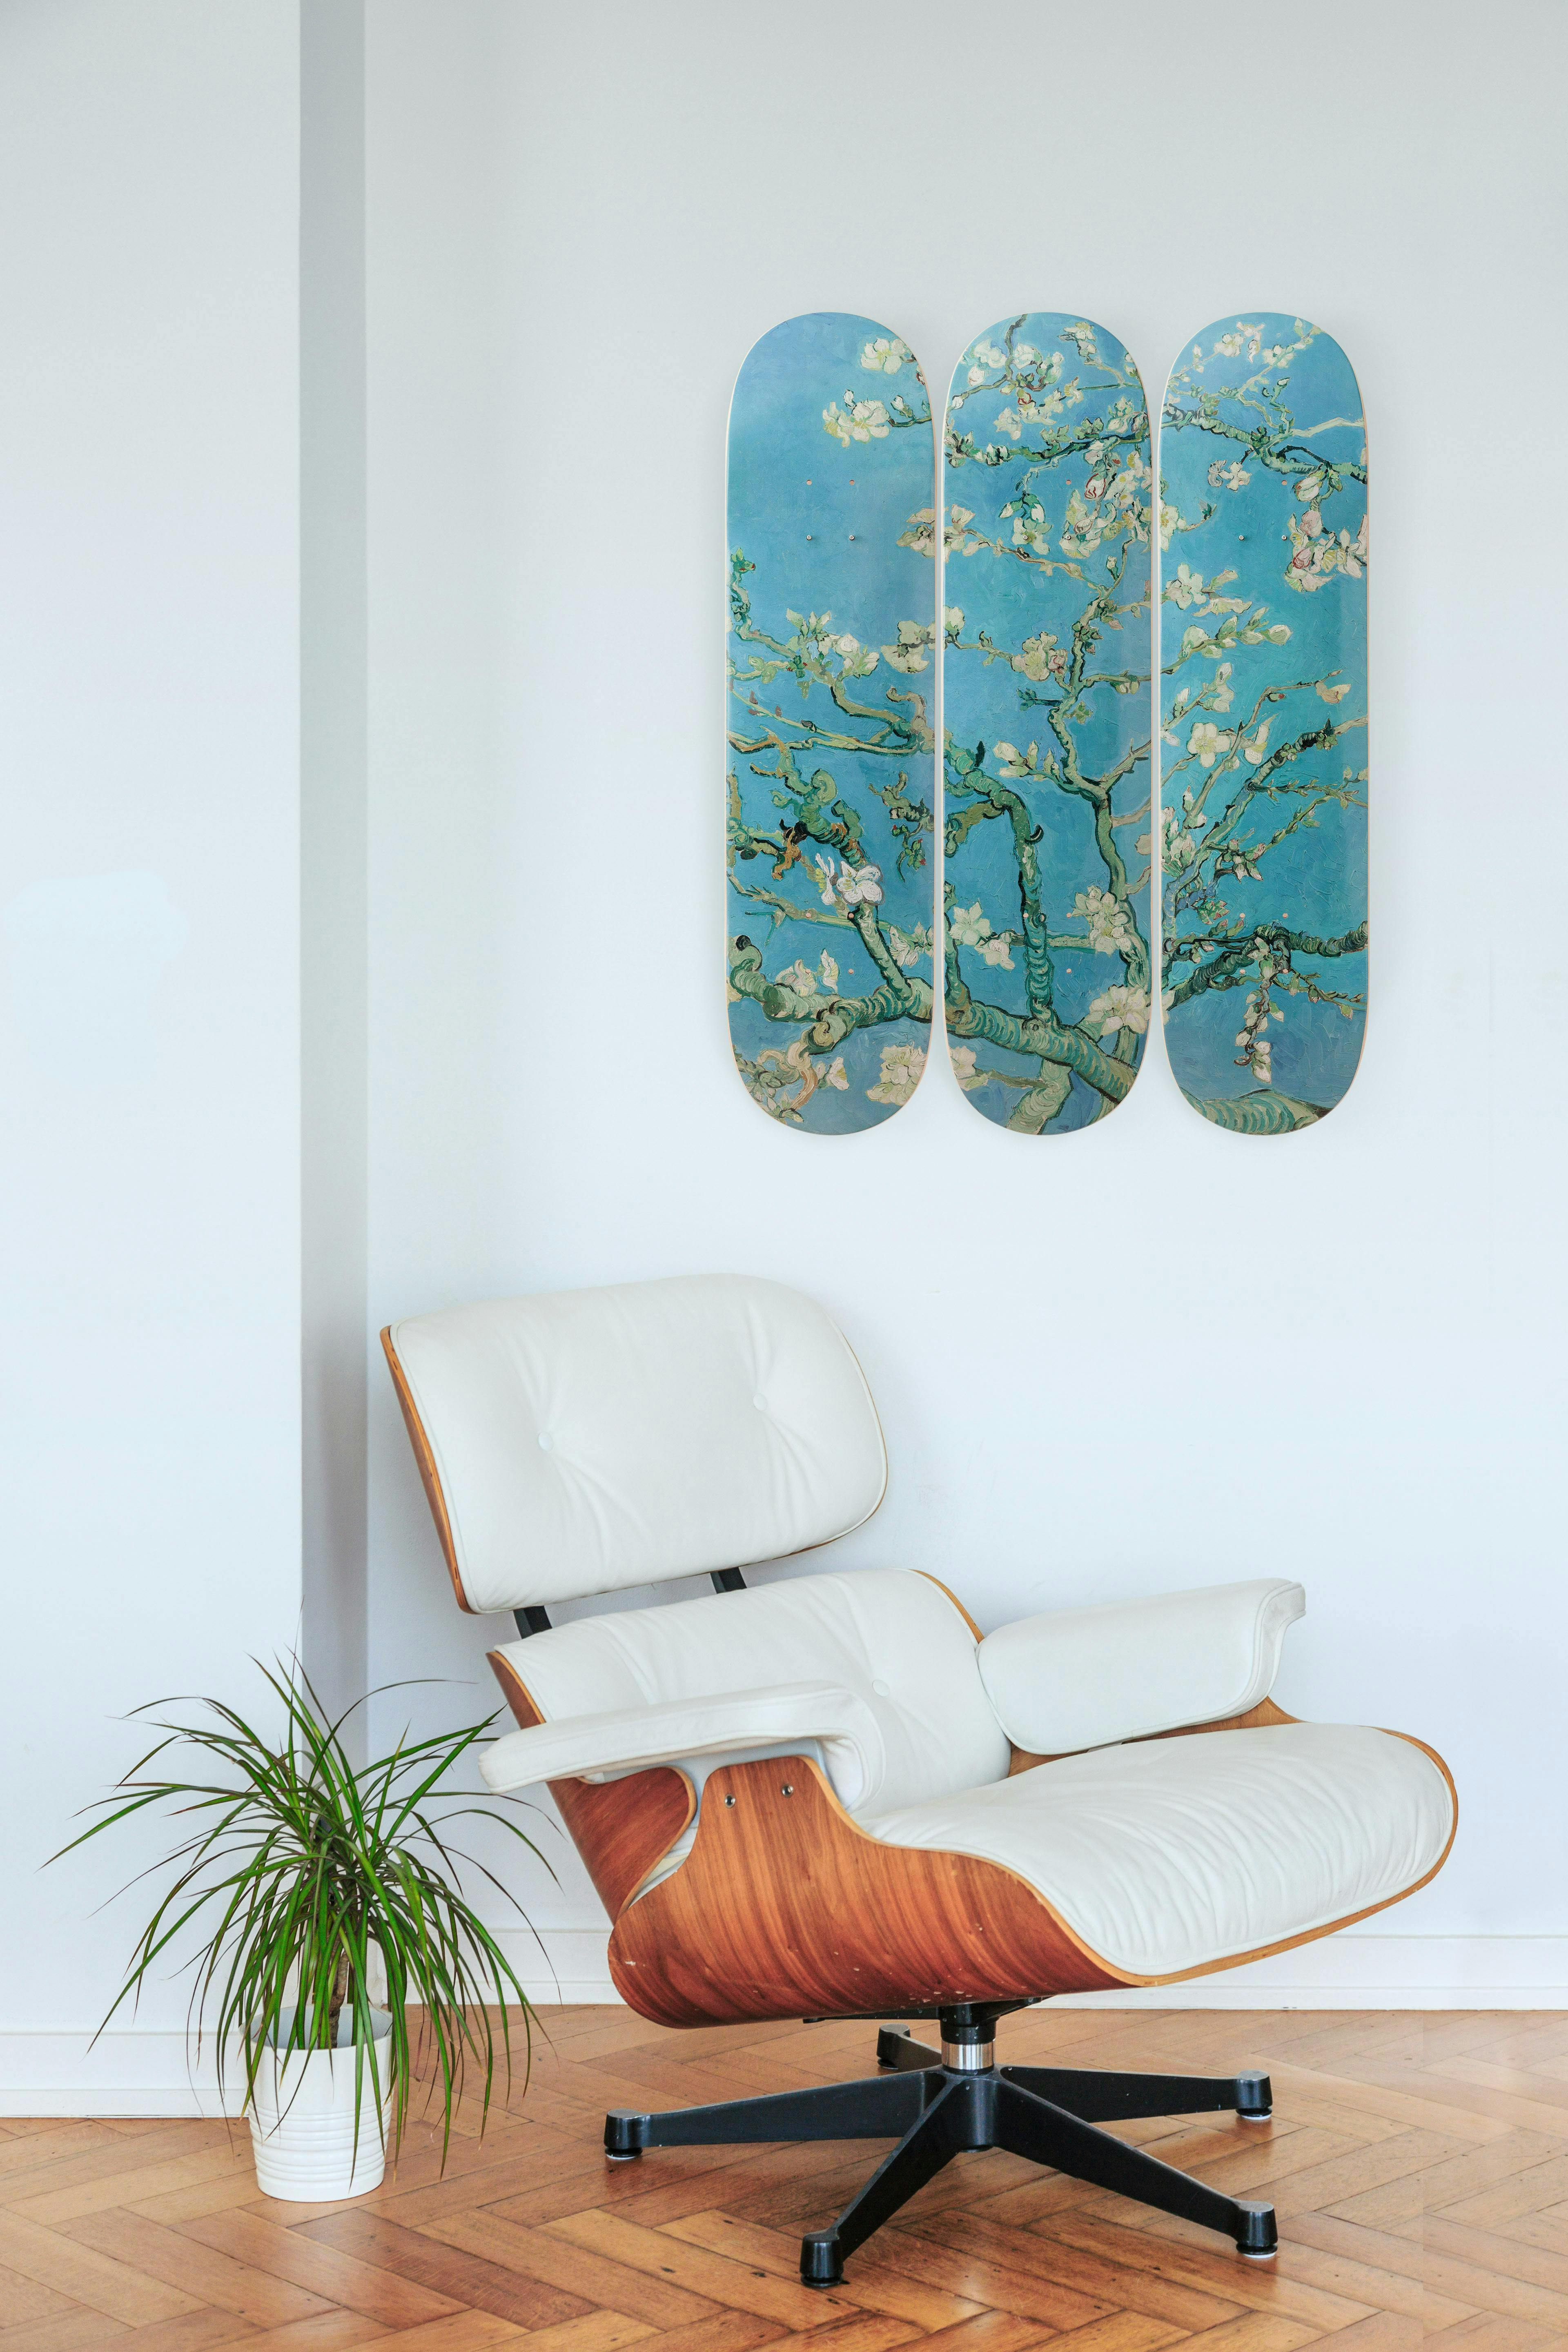 furniture chair home decor